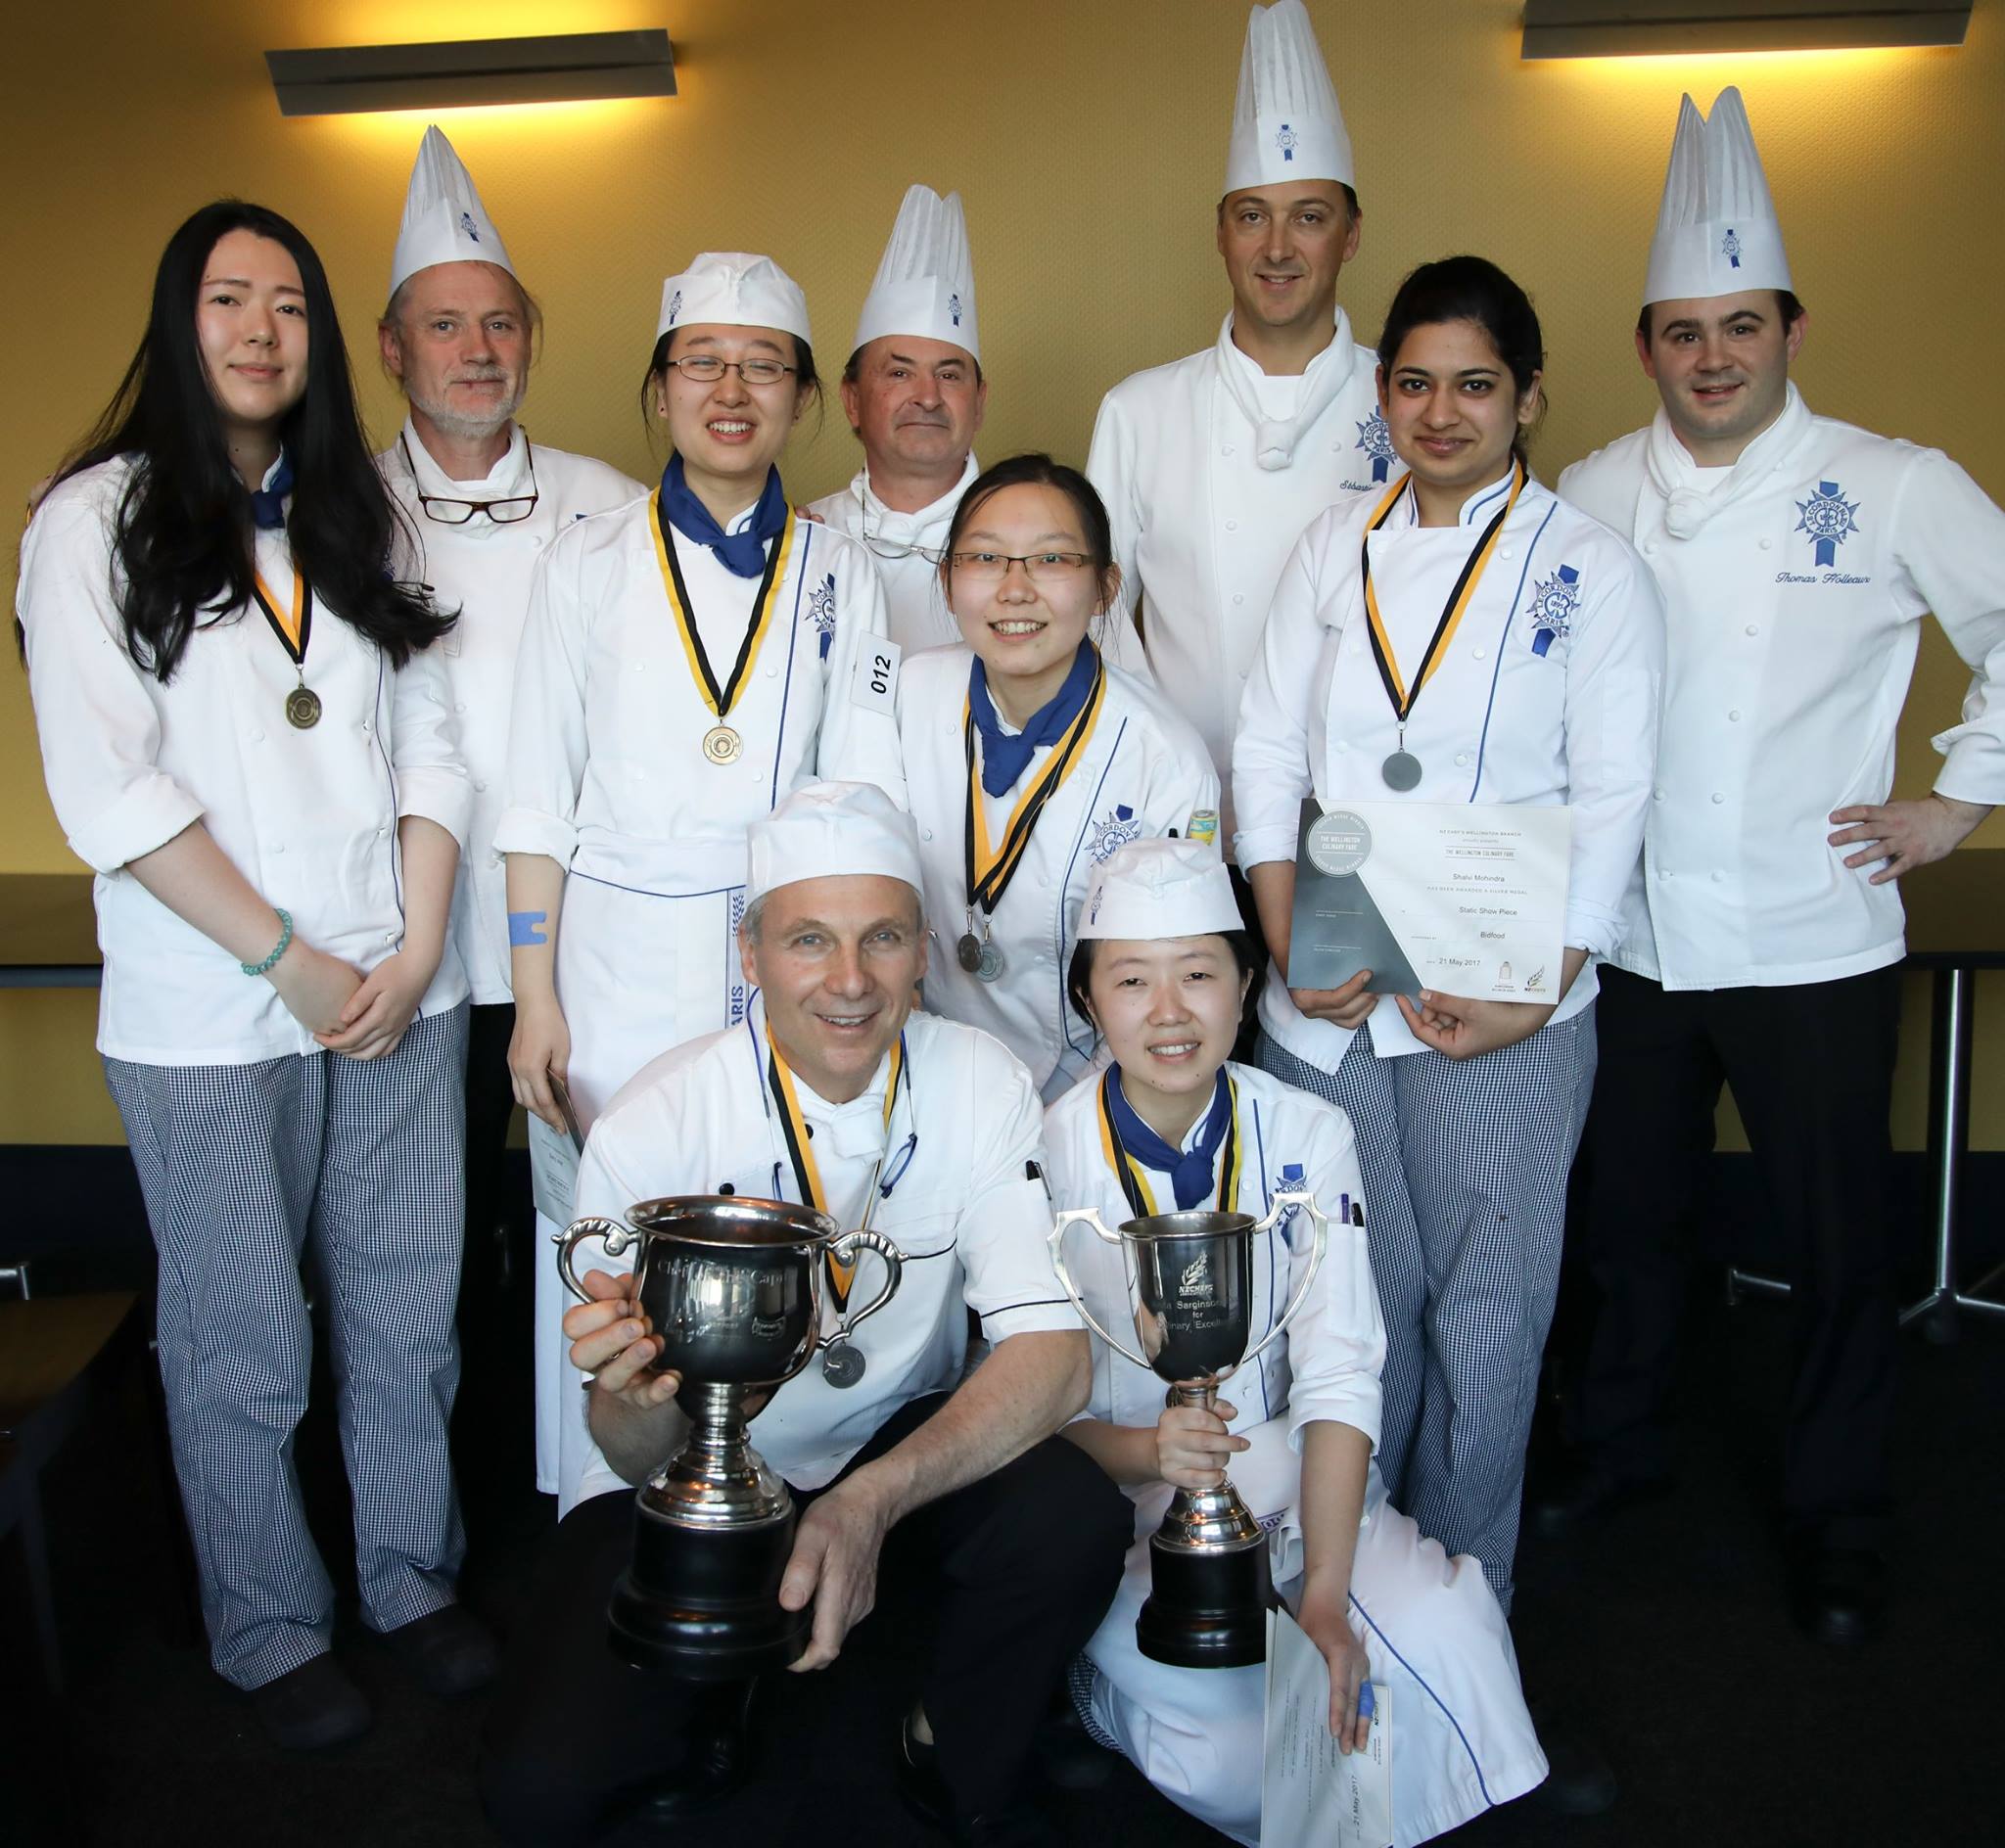 Le Cordon Bleu Students & Chef Lecturer Impresses Judges During NZChefs Competition